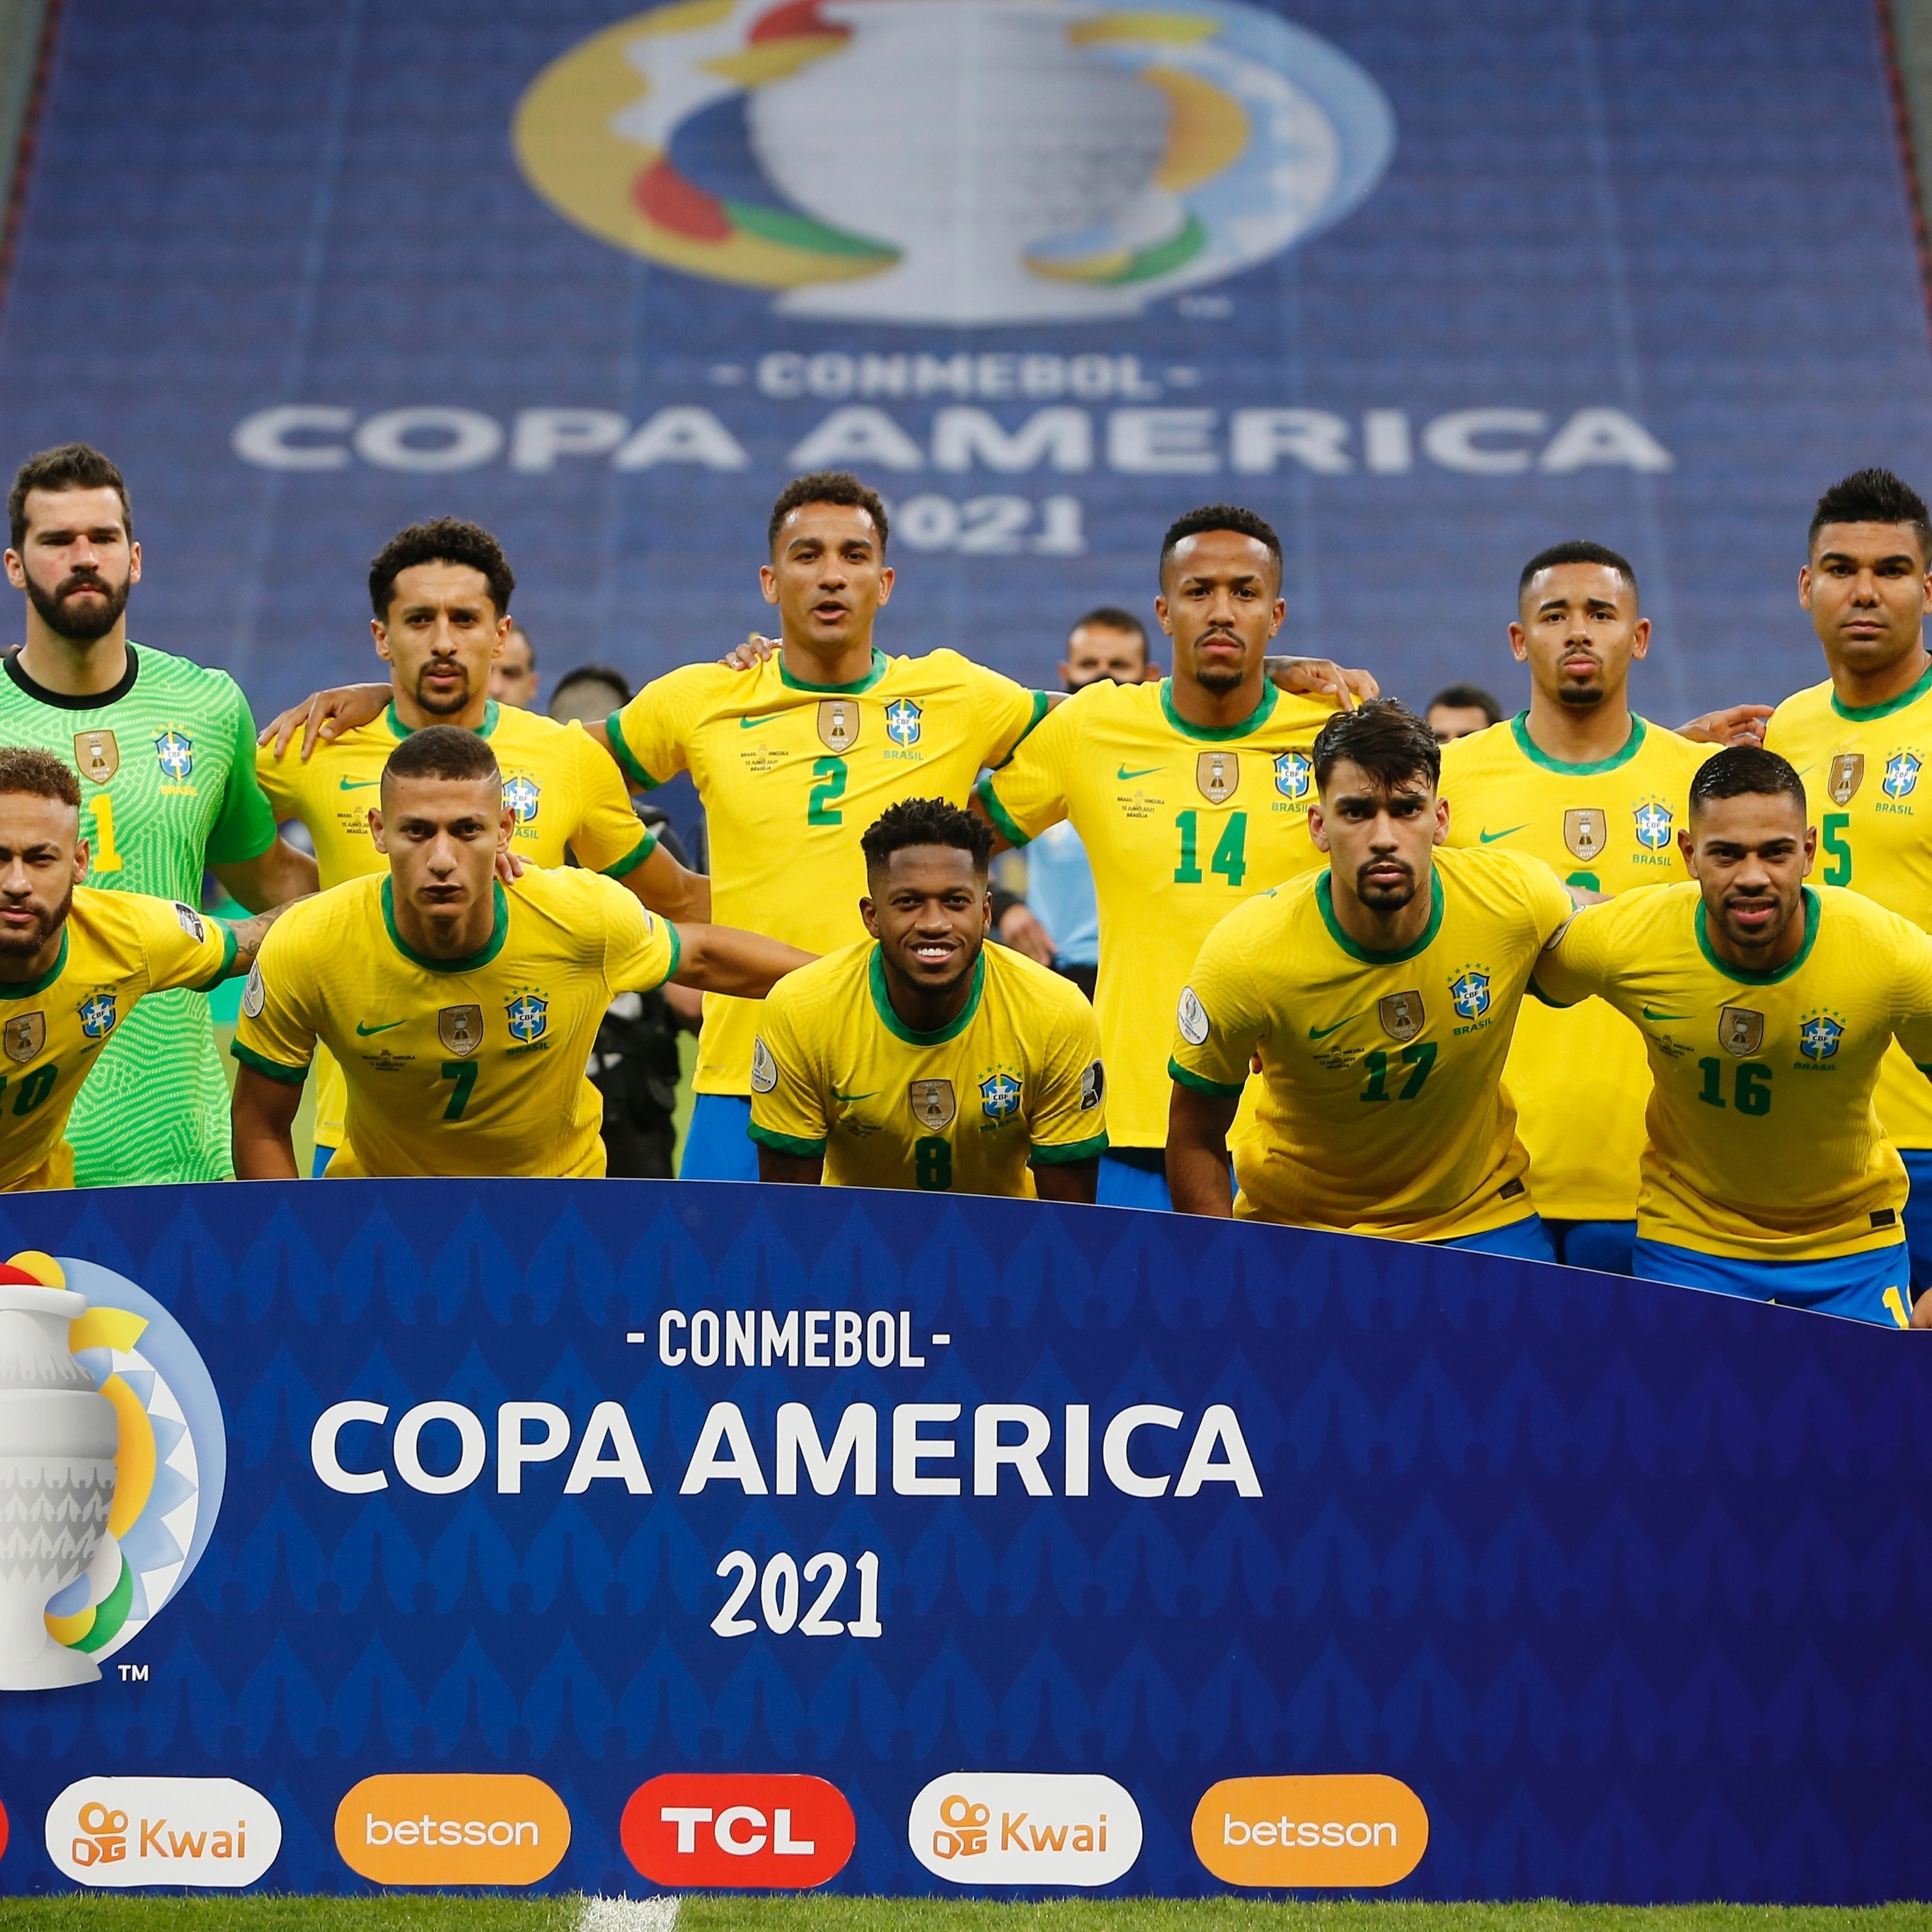 Simplesmente os números da Seleção Brasileira e da seleção